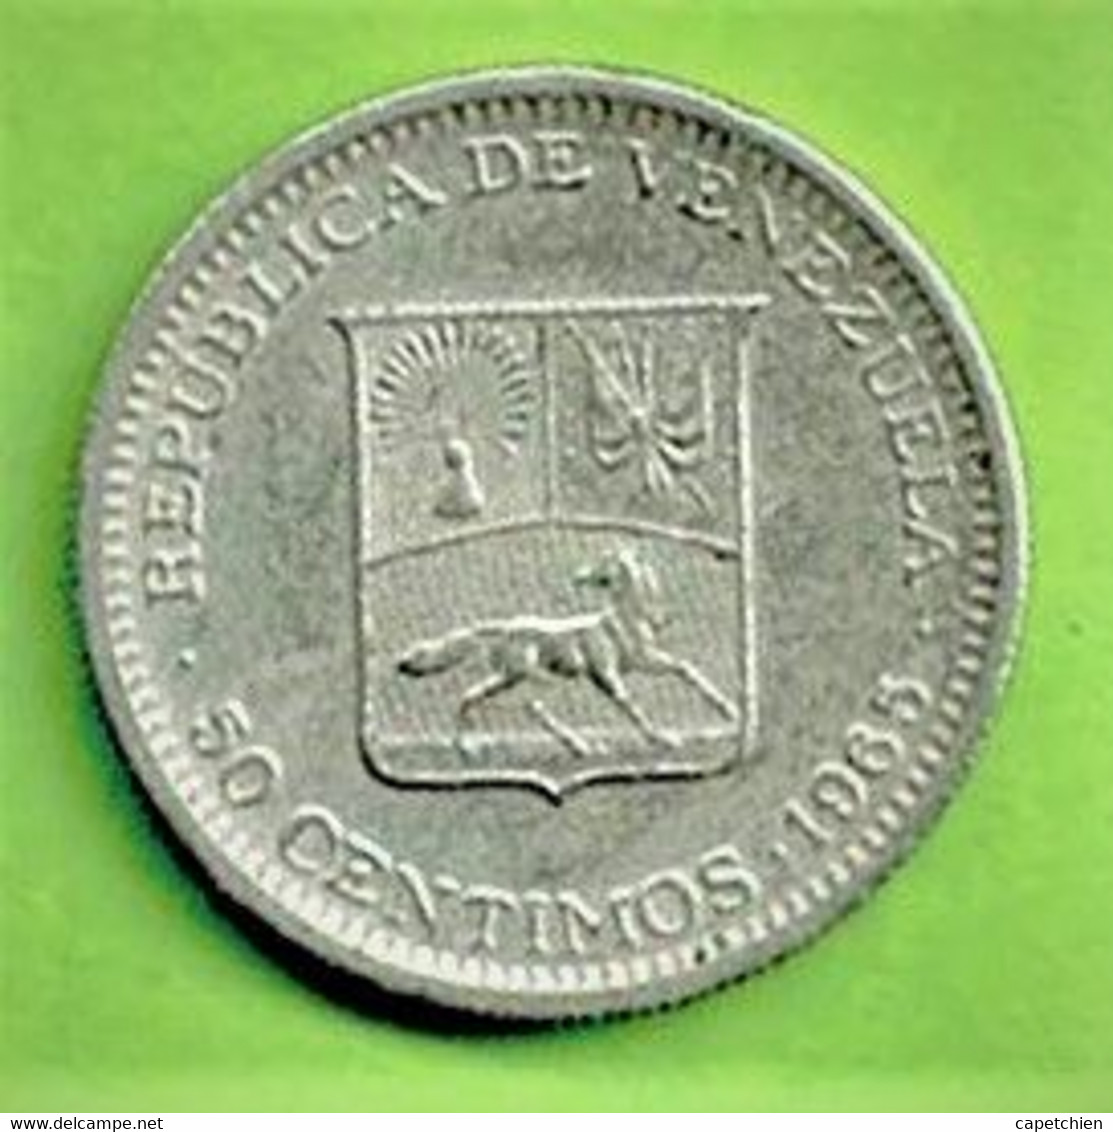 REPUBLICA DE VENEZUELA / 50 CENTIMOS / 1965 / BOLIVAR LIBERTADOR - Venezuela